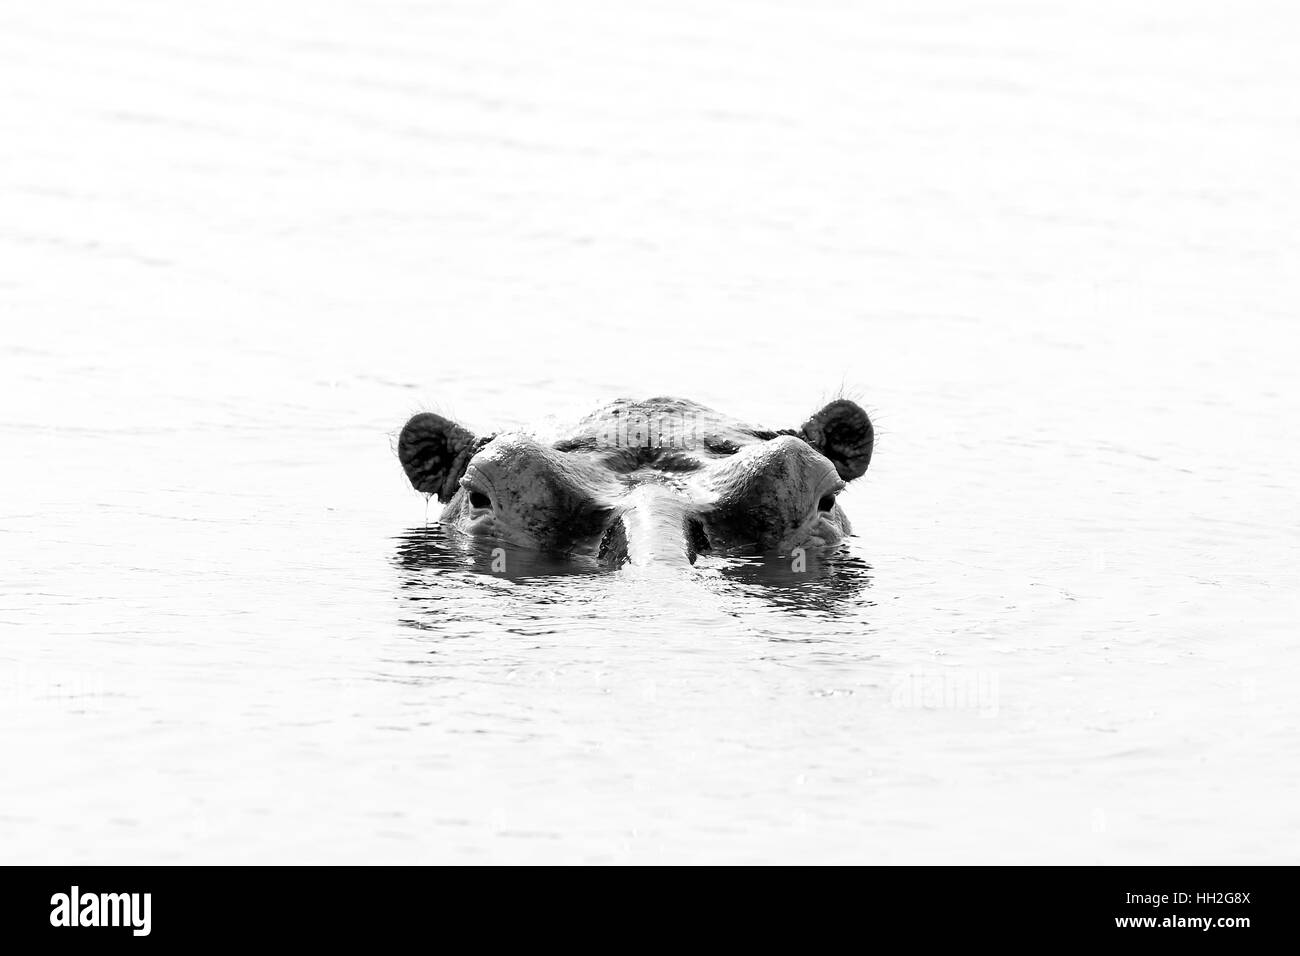 Flusspferd (Hippopotamus Amphibius) im Wasser, mit Blick auf die Oberfläche. Schwarz / weiß Bild. Lake Mburo, Uganda Stockfoto